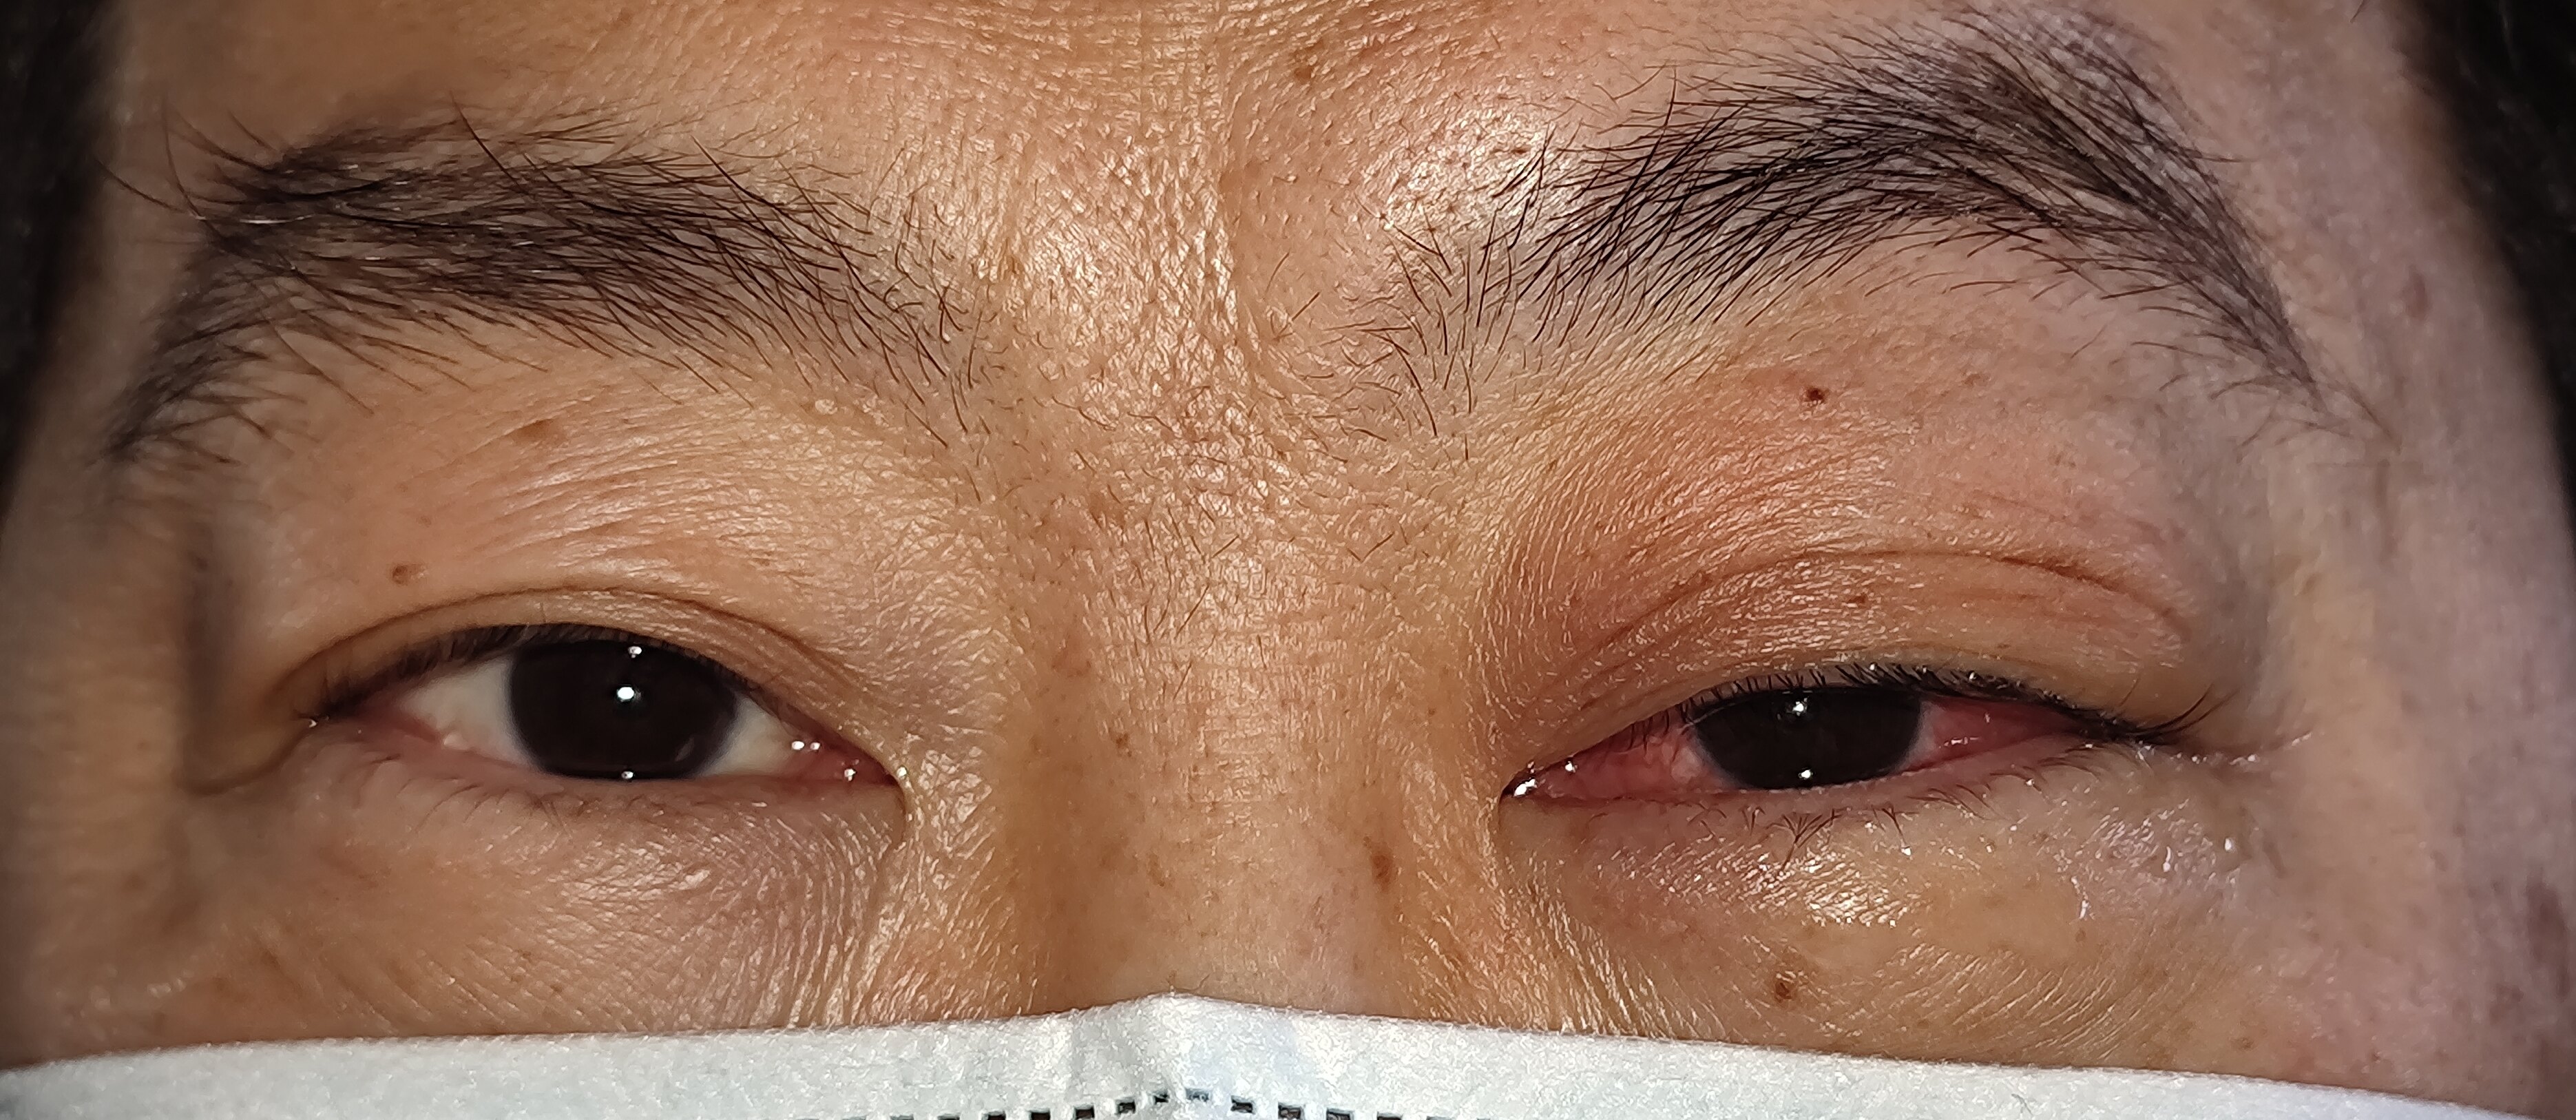 不常见的累及眼球的泪腺炎一例